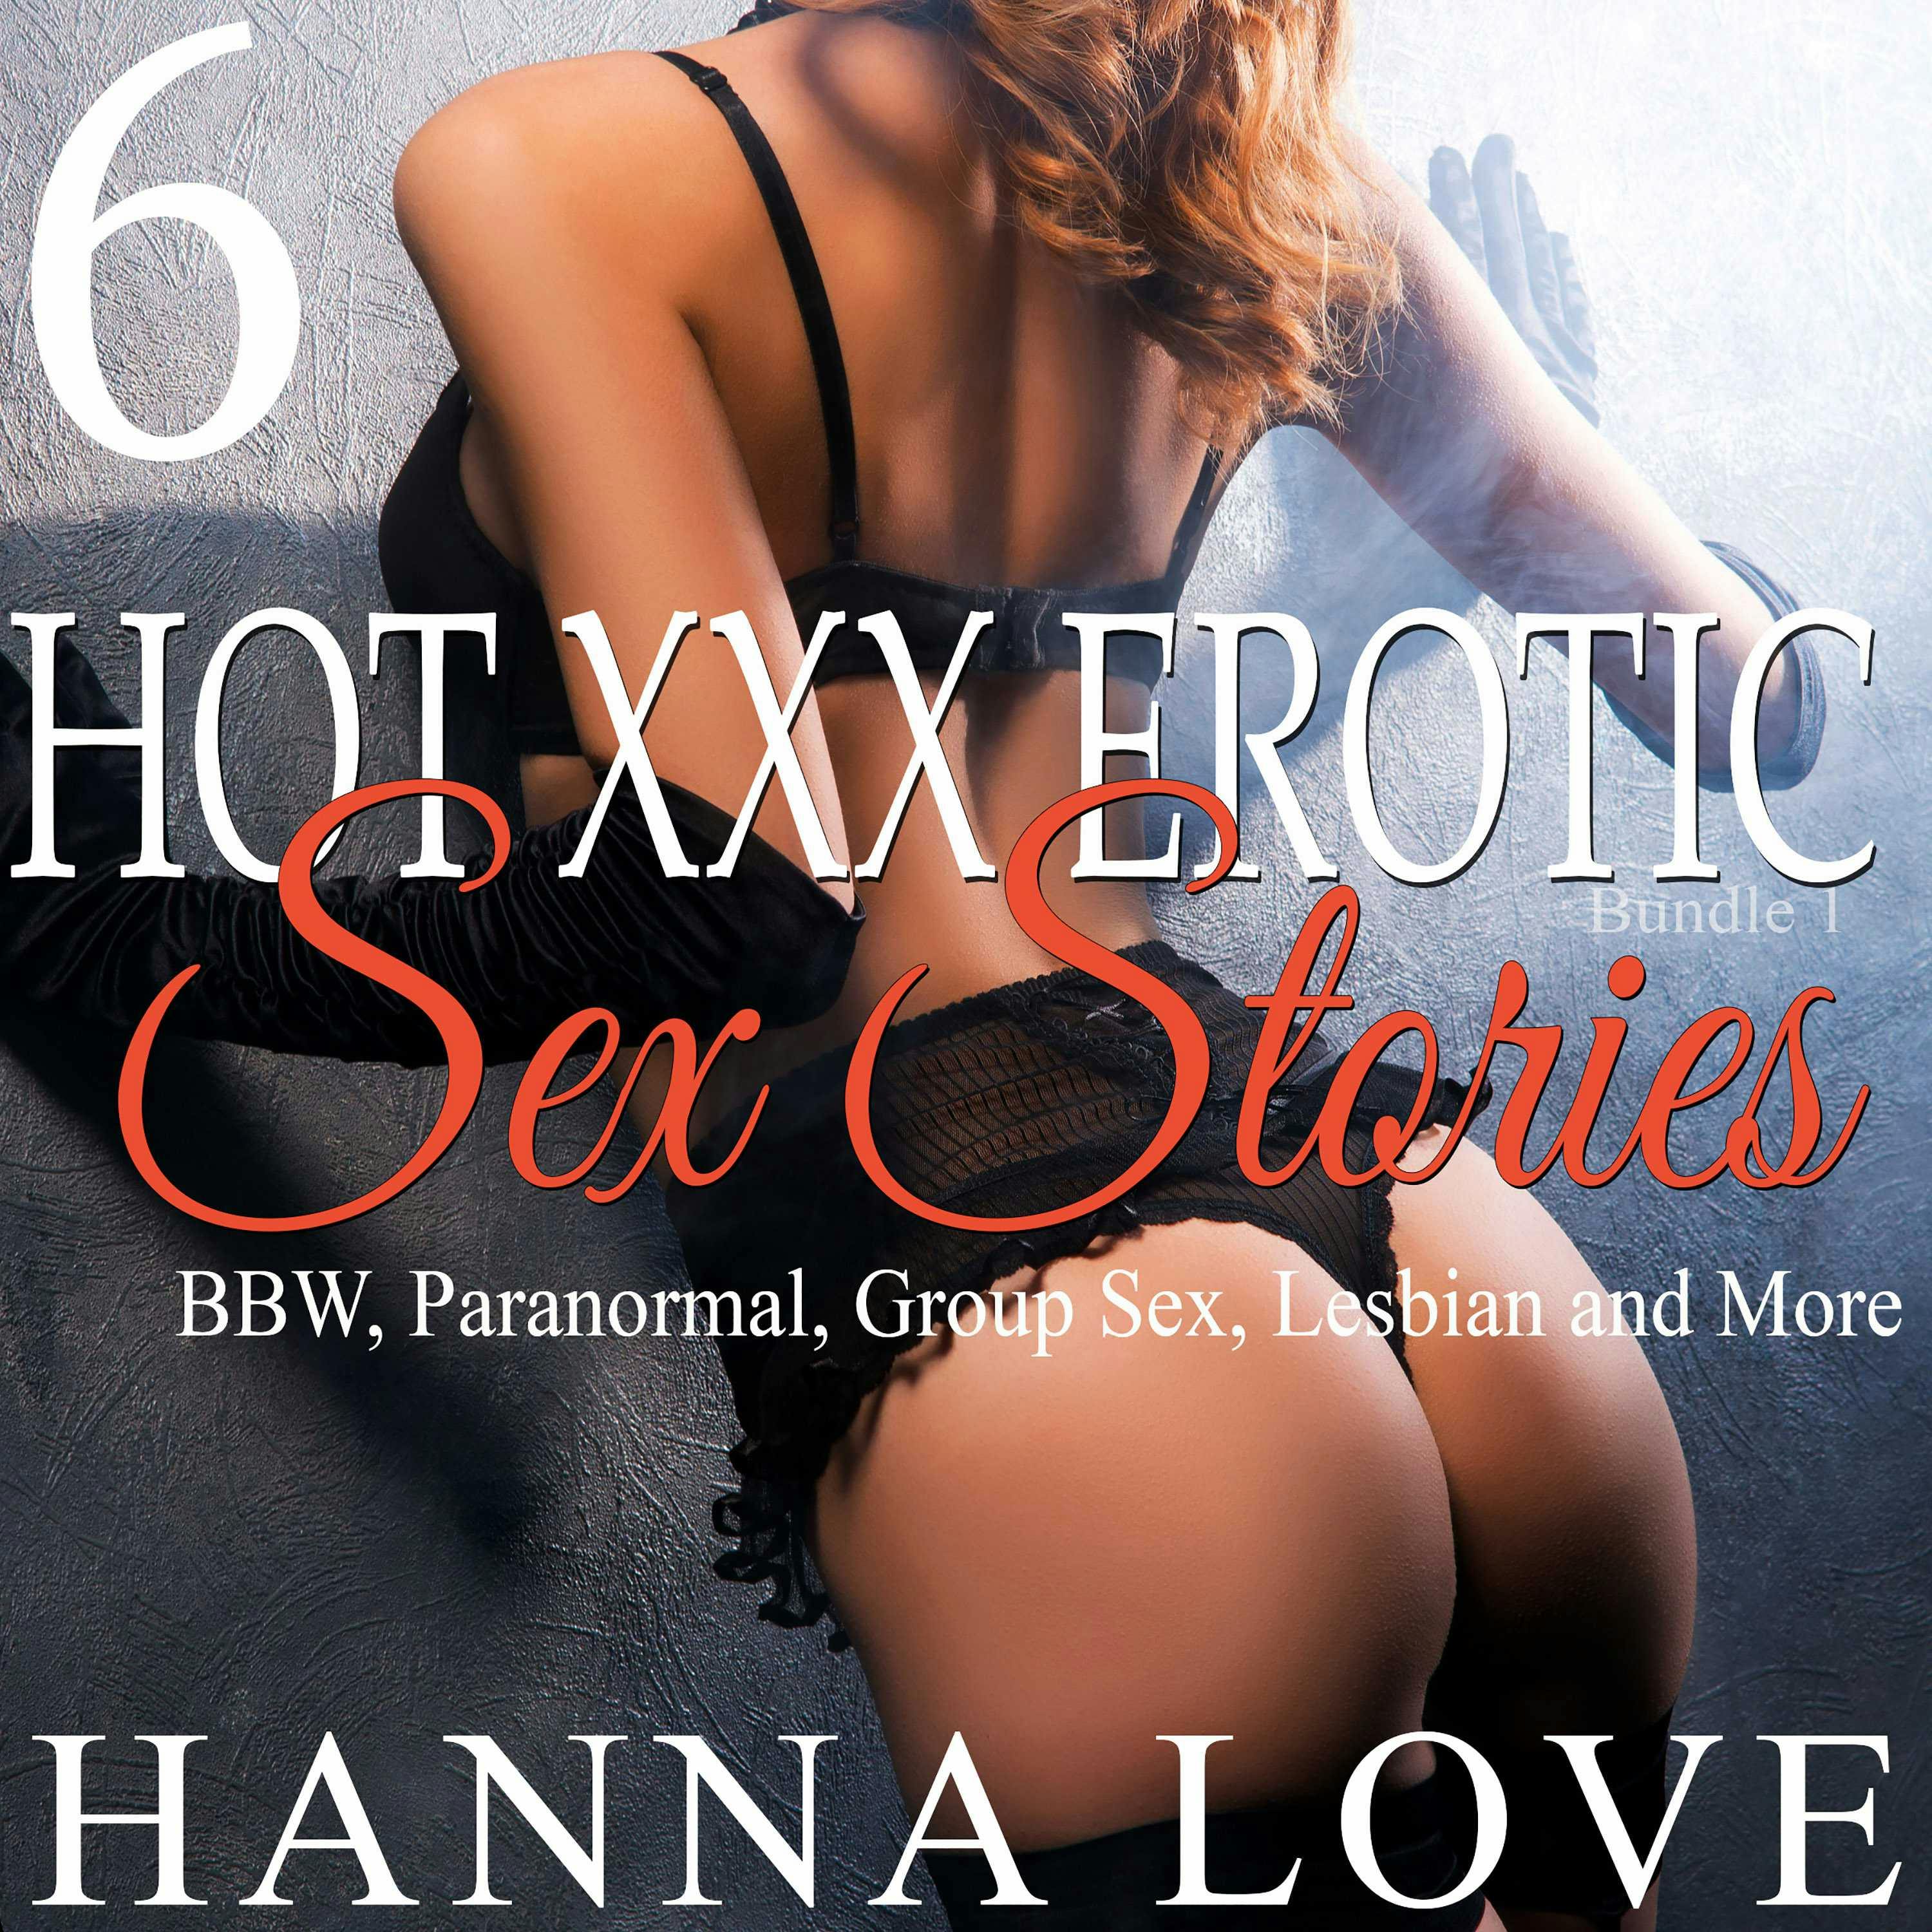 storie erotisk sex